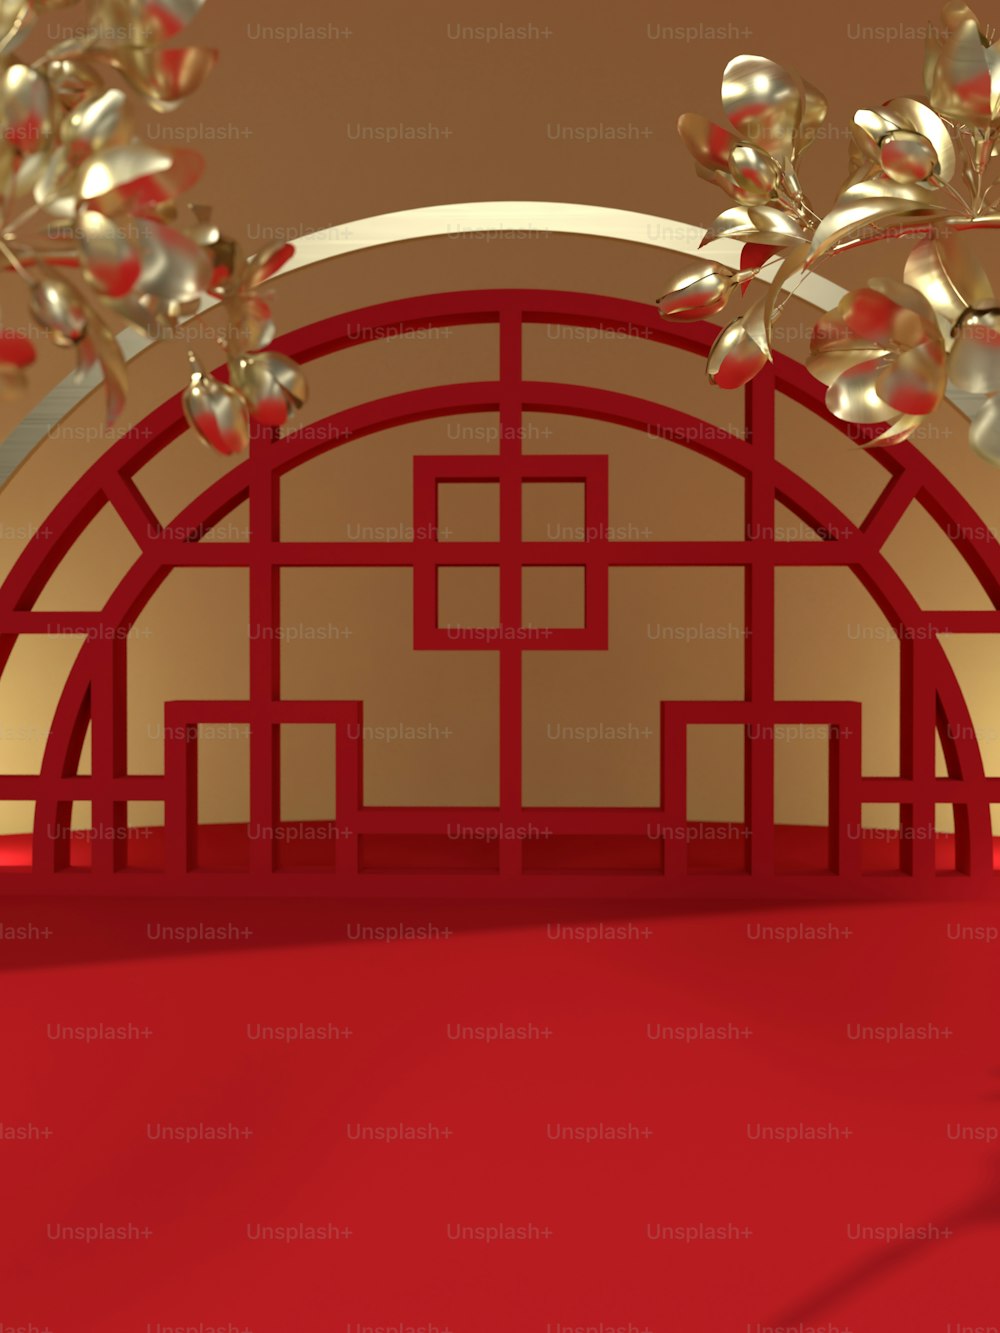 레드 카펫과 붉은 벽이있는 빨간 방